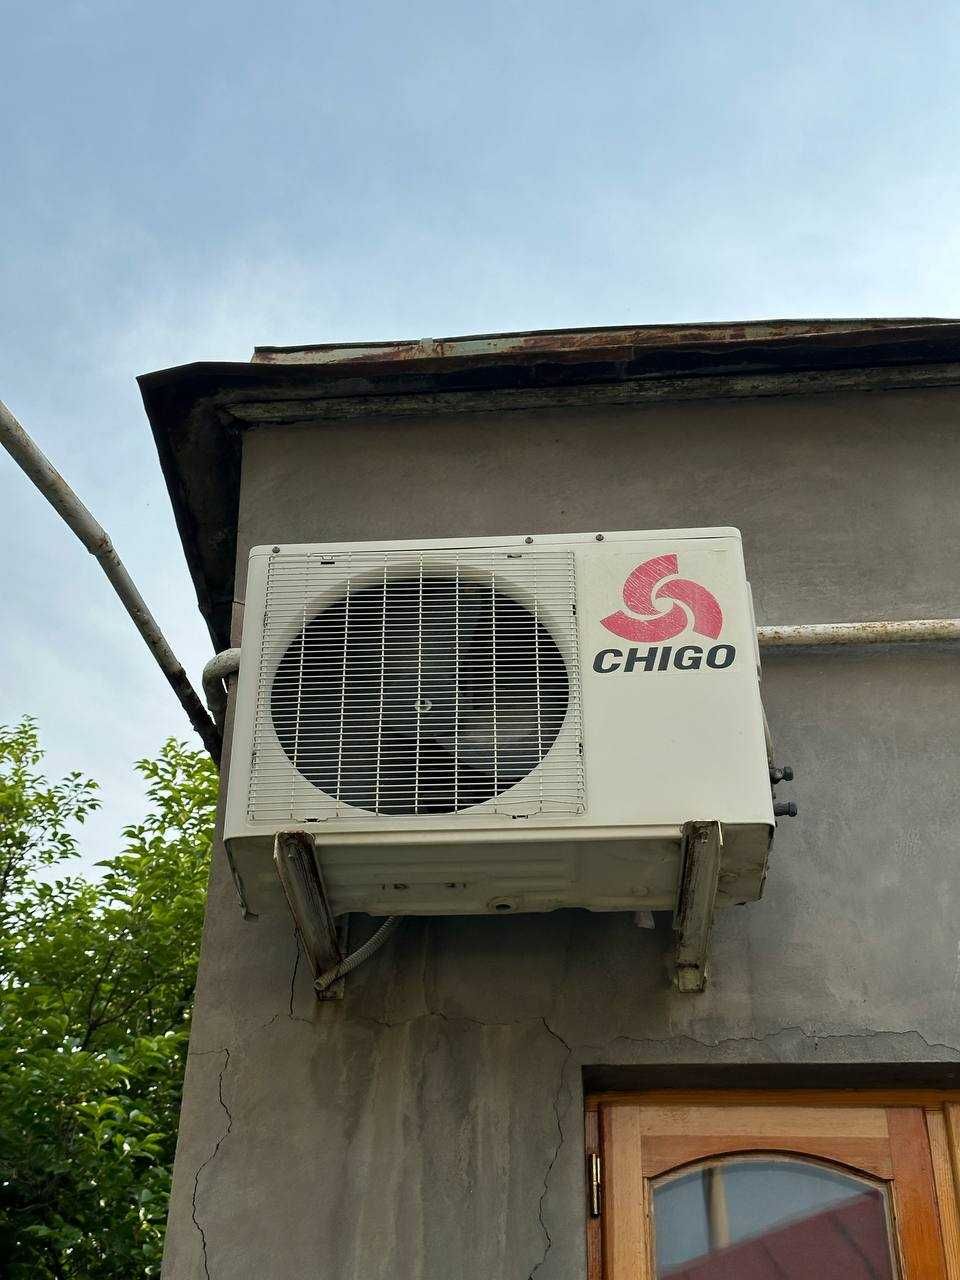 Продаётся кондиционер CHigo-9 в отличном состоянии, рабочий.